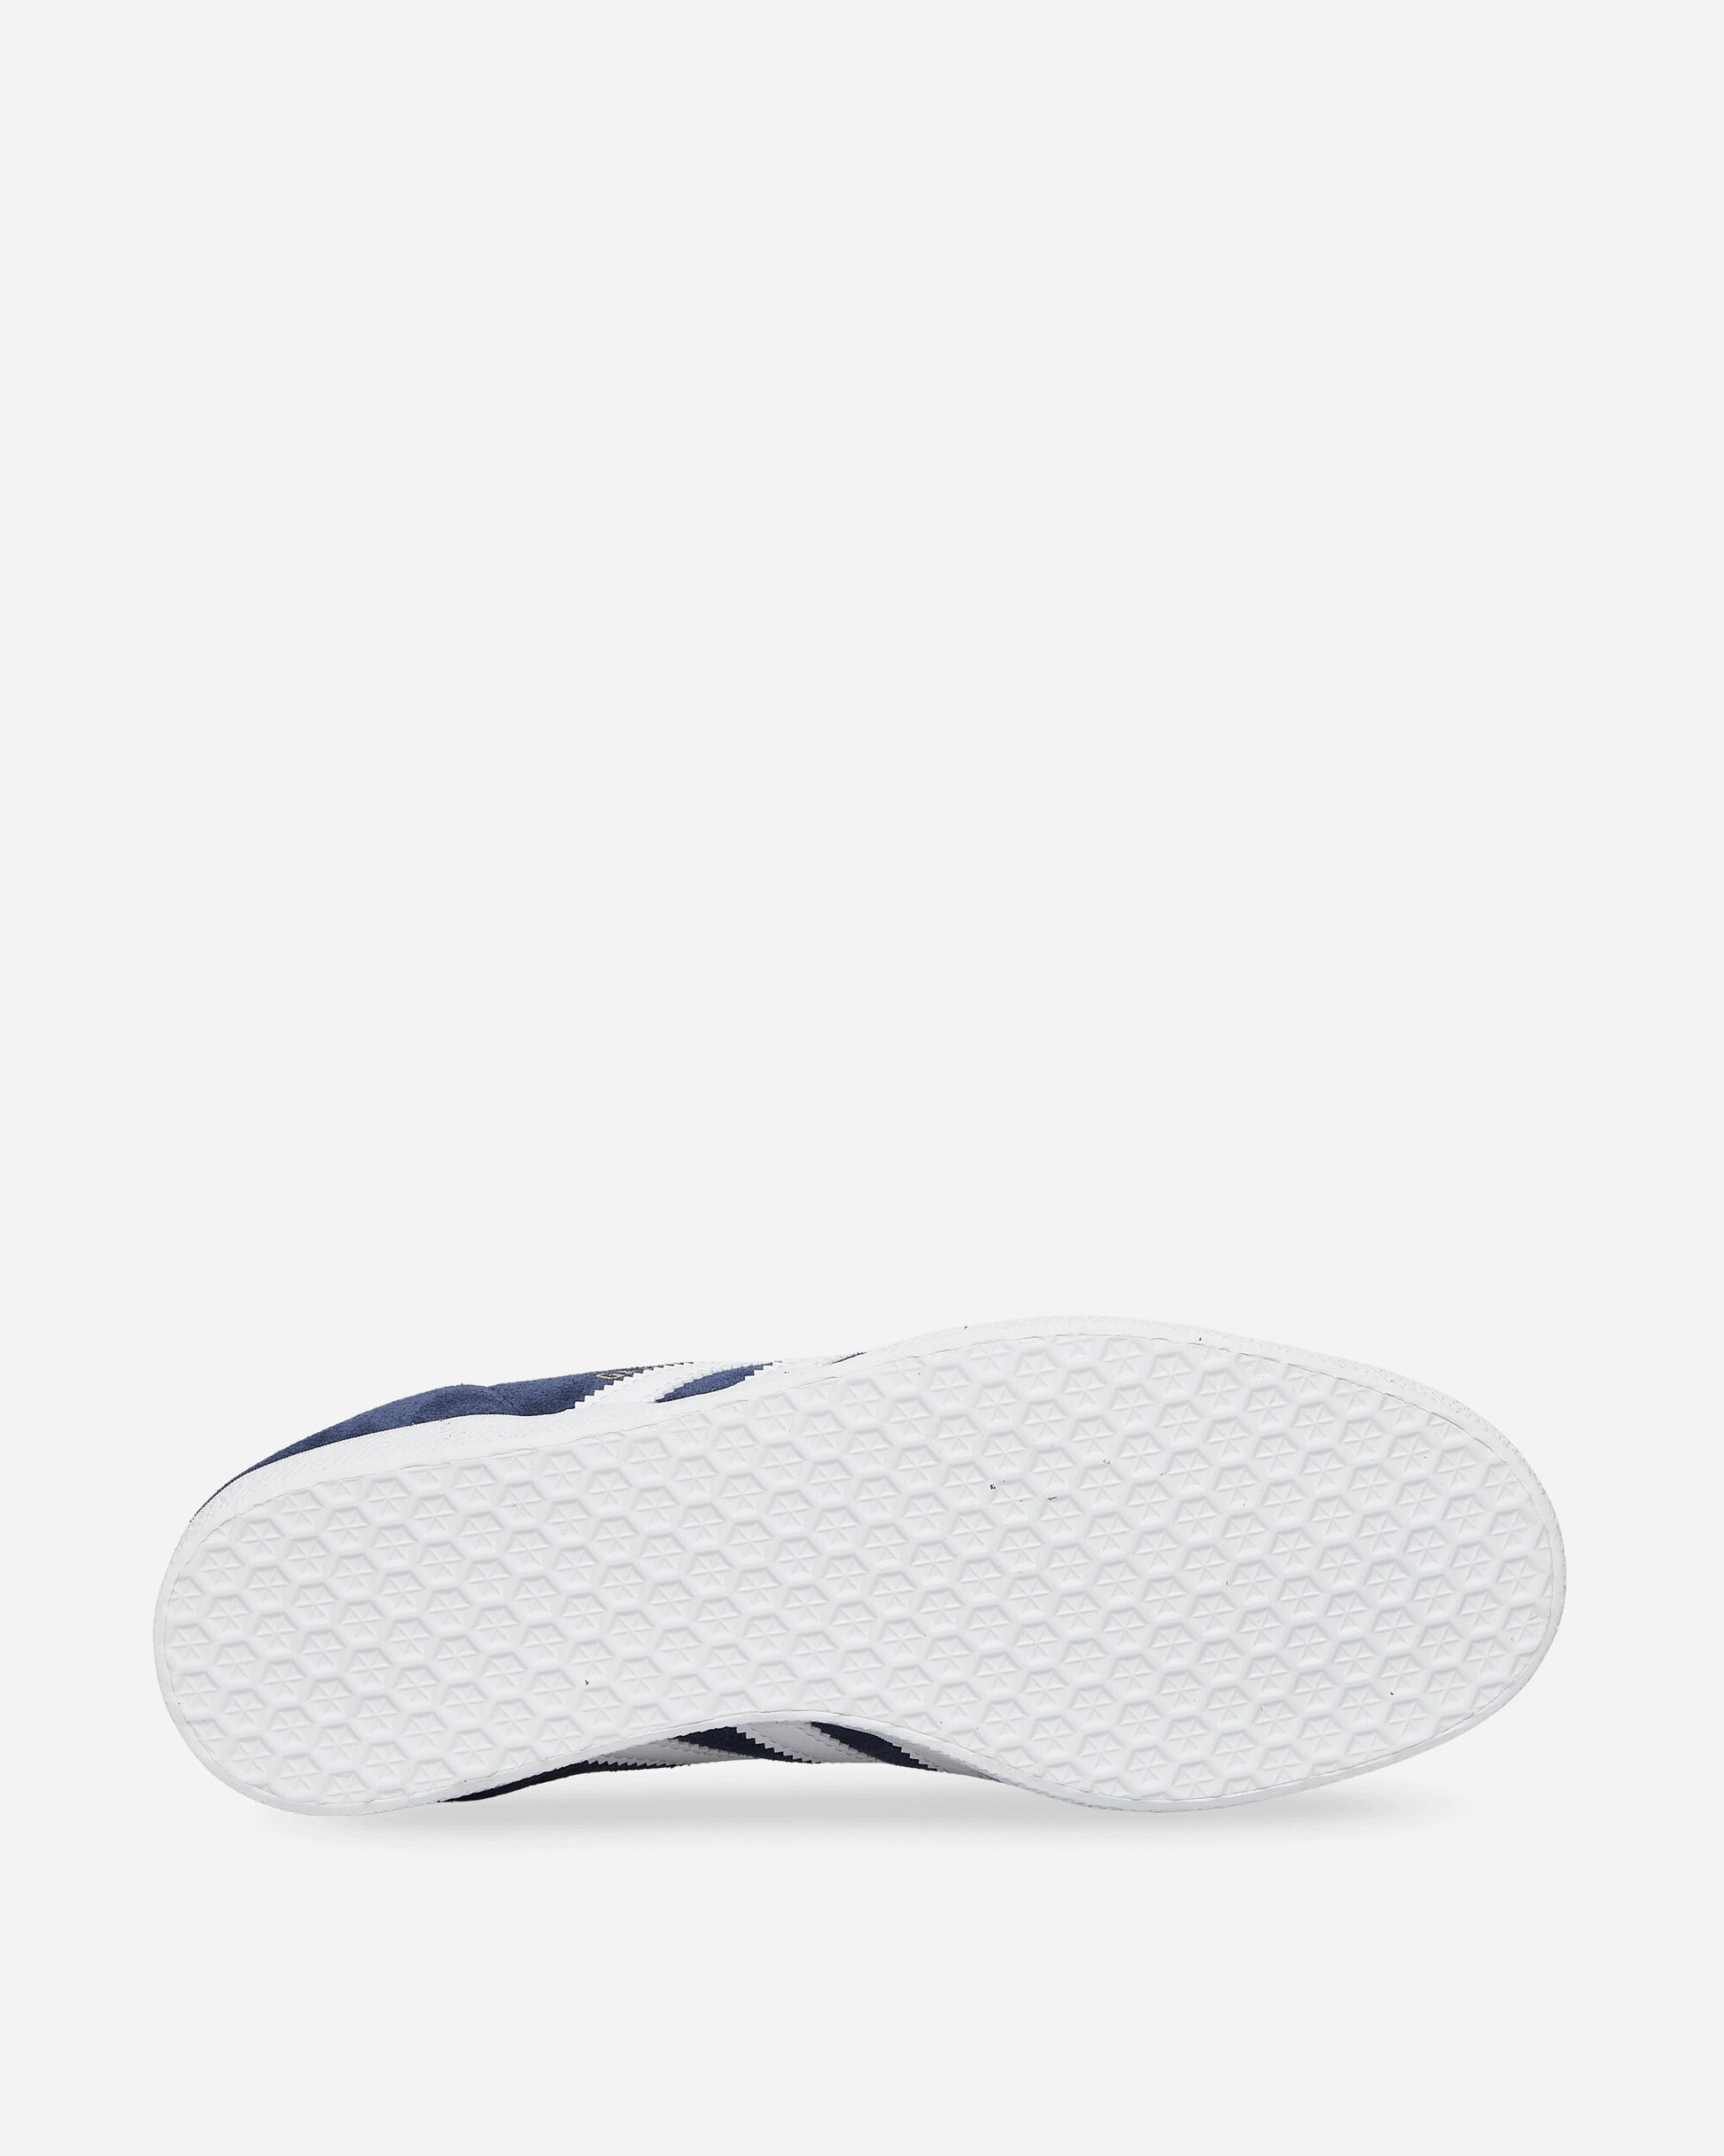 adidas Gazelle Cblack/White Sneakers Low BB5478 001